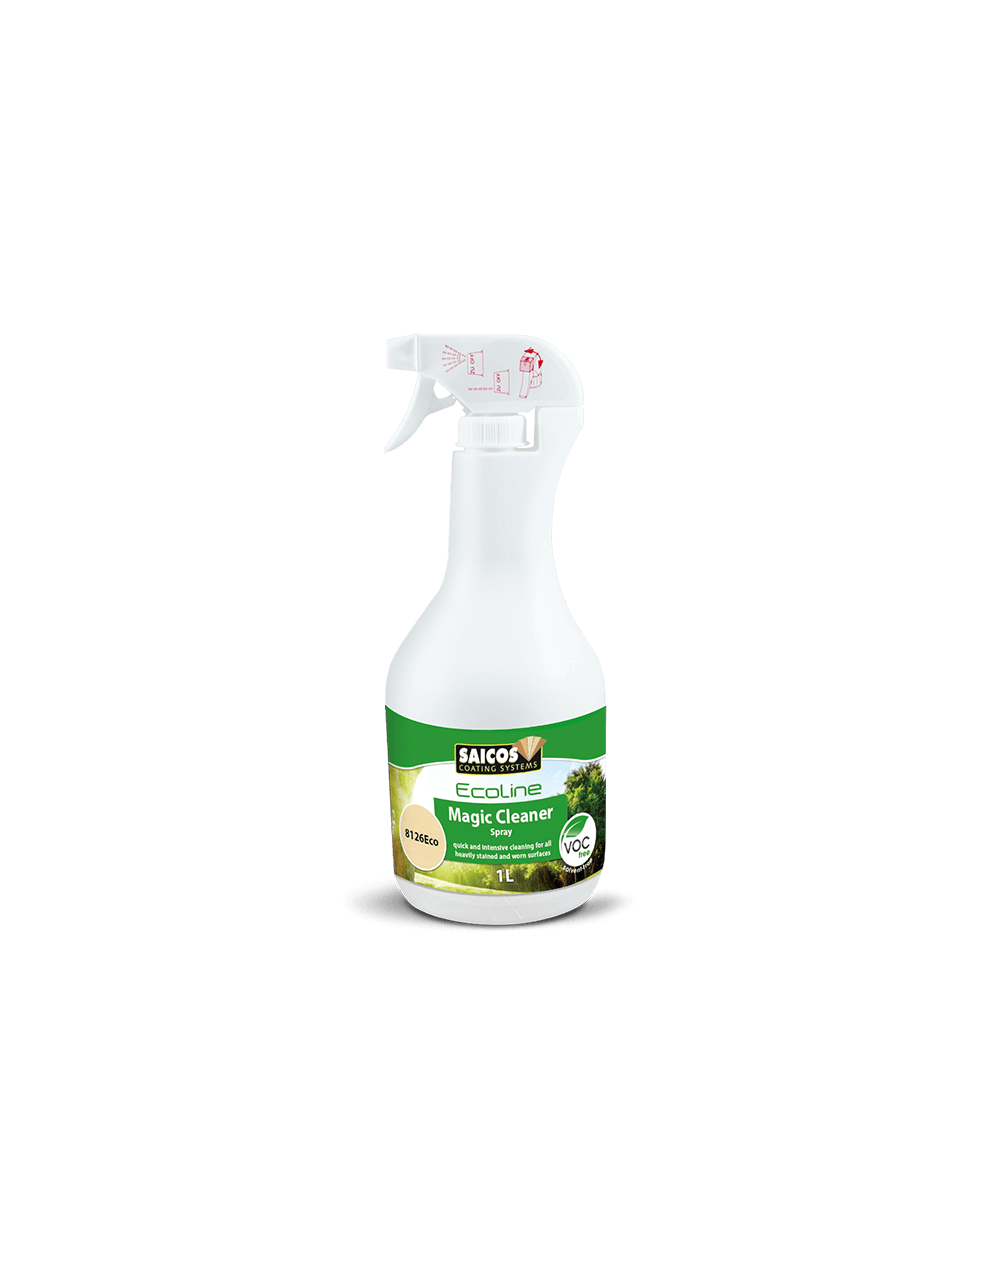 Saicos Ecoline Magic Cleaner, Spray